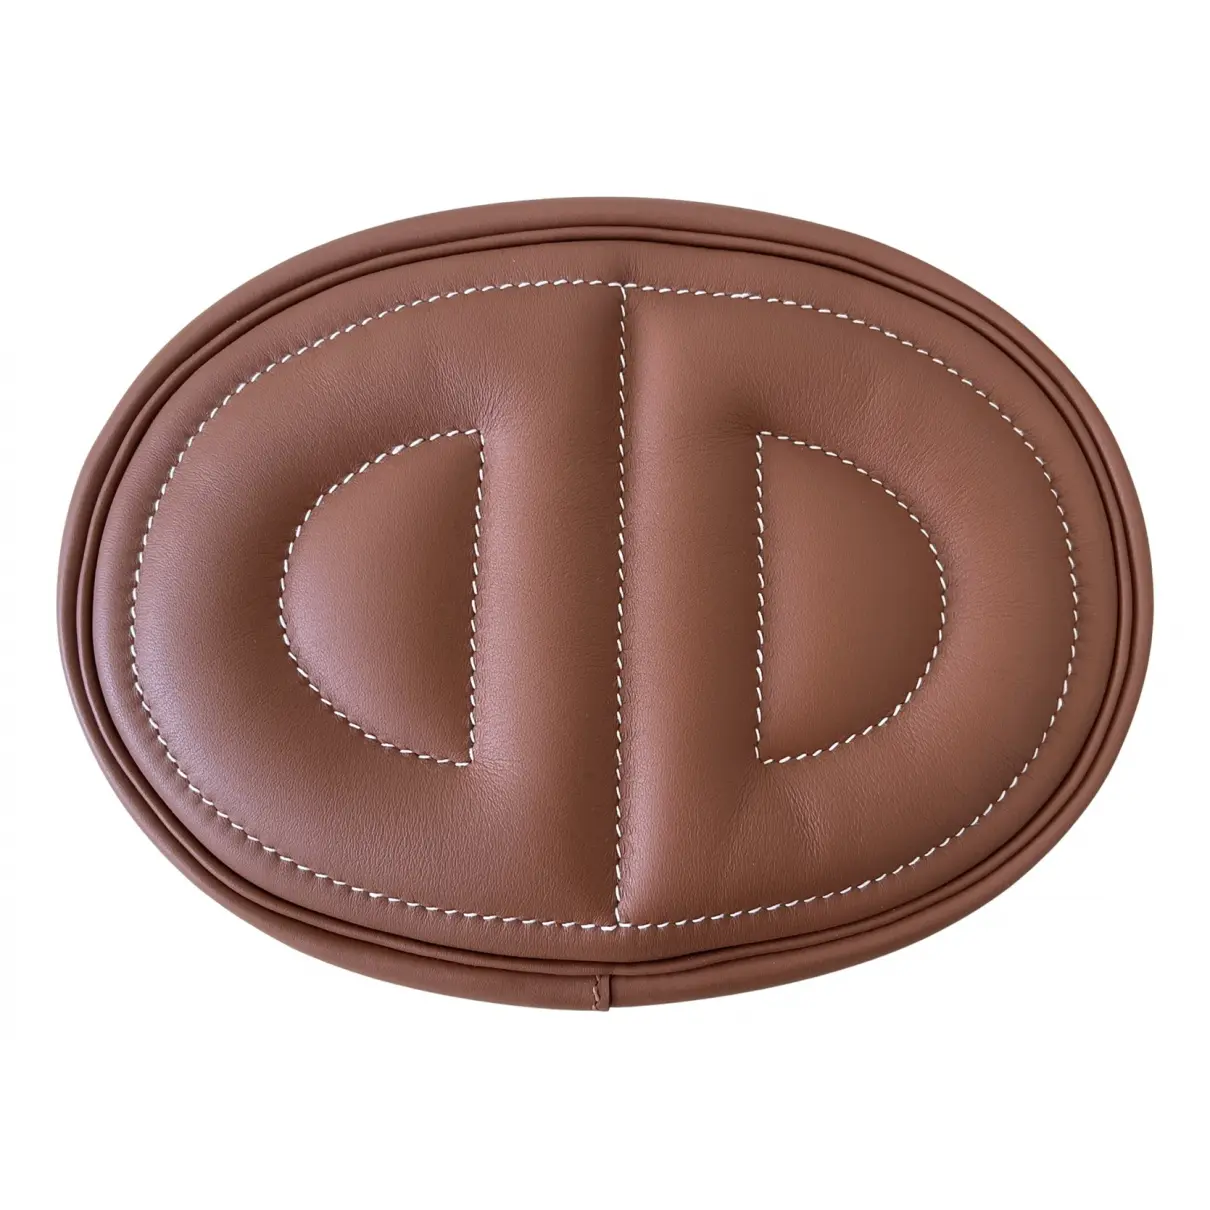 In-The-Loop leather handbag Hermès